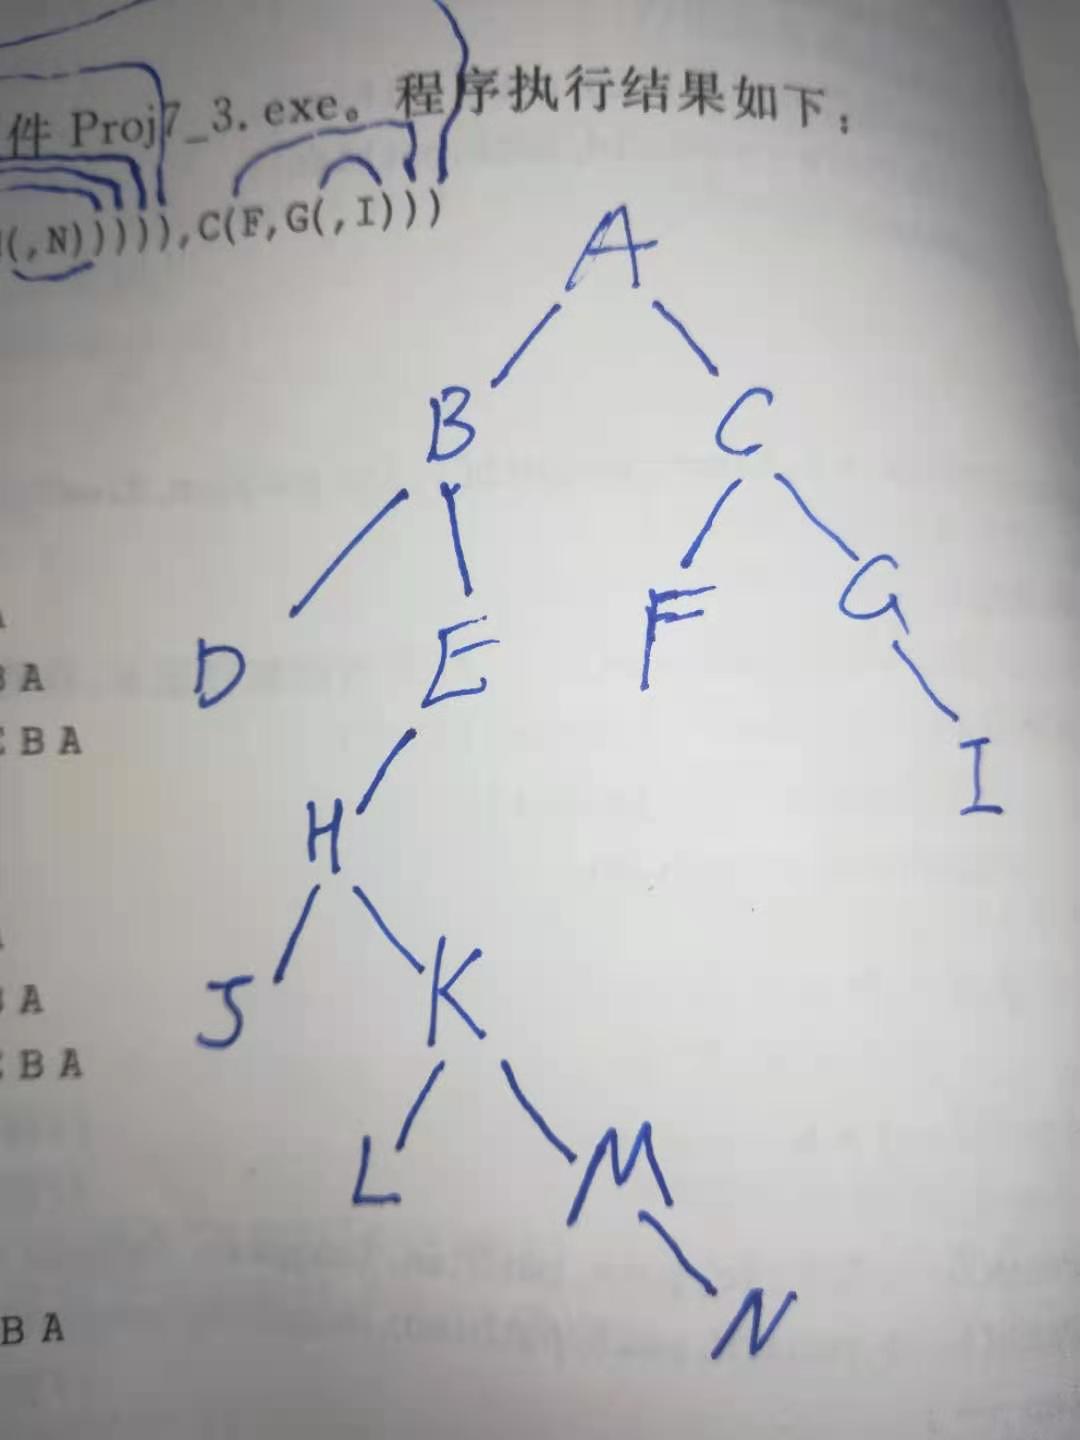 二叉树的层序遍历，非递归，c/c++描述，输出所有叶节点到根节点路径